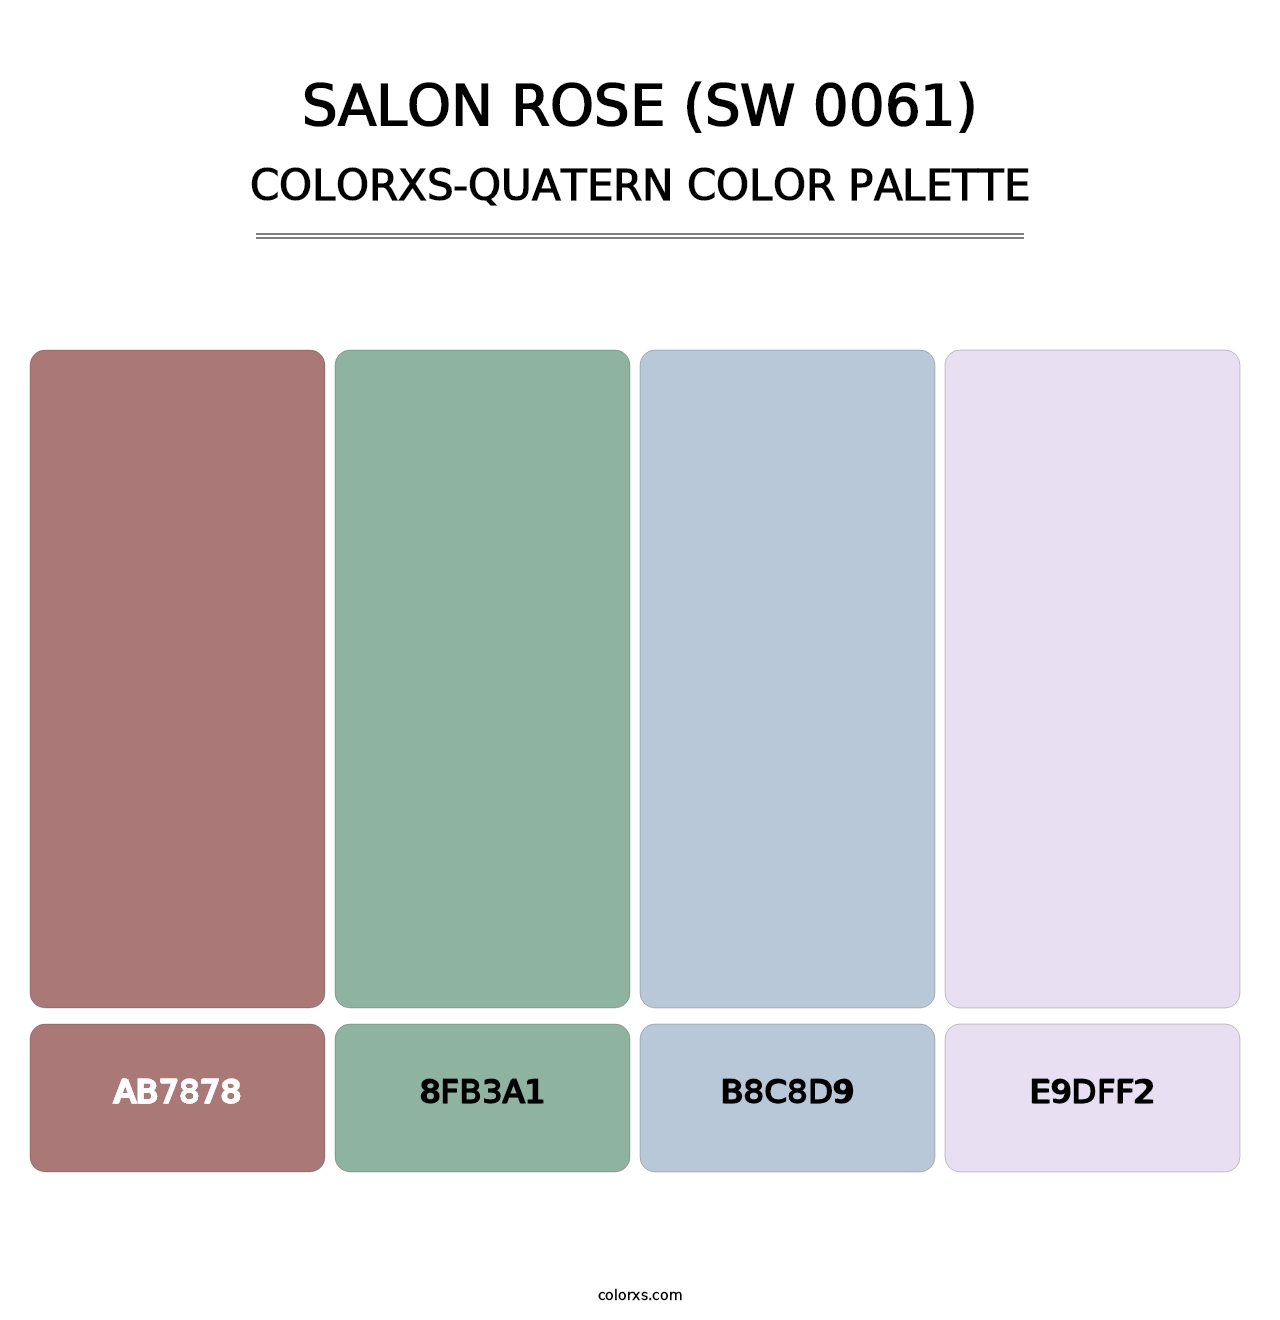 Salon Rose (SW 0061) - Colorxs Quatern Palette